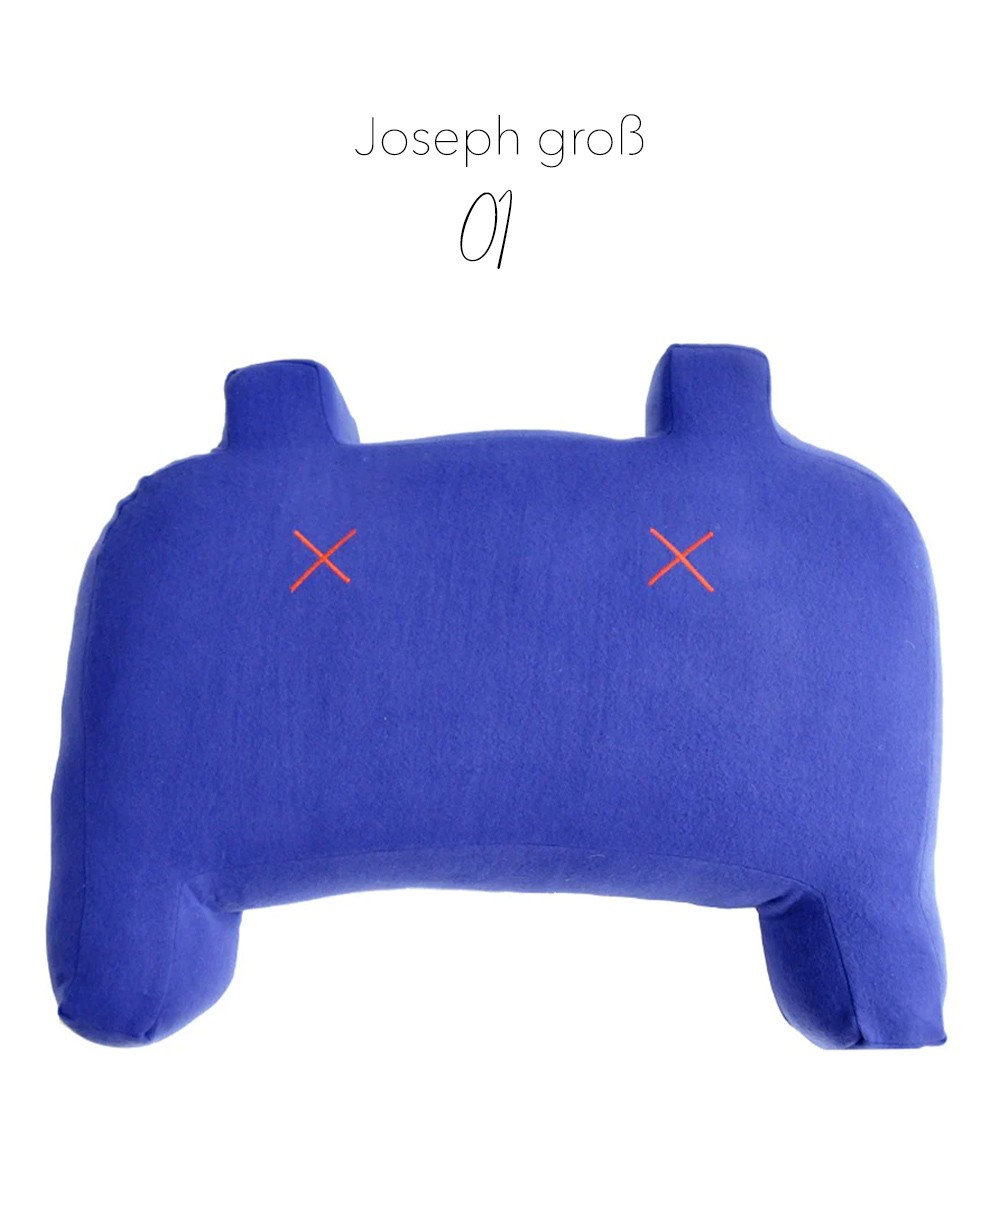 Produktbild des "Monster Joseph groß" in blau des Herstellers LPJ im RAUM Conceptstore